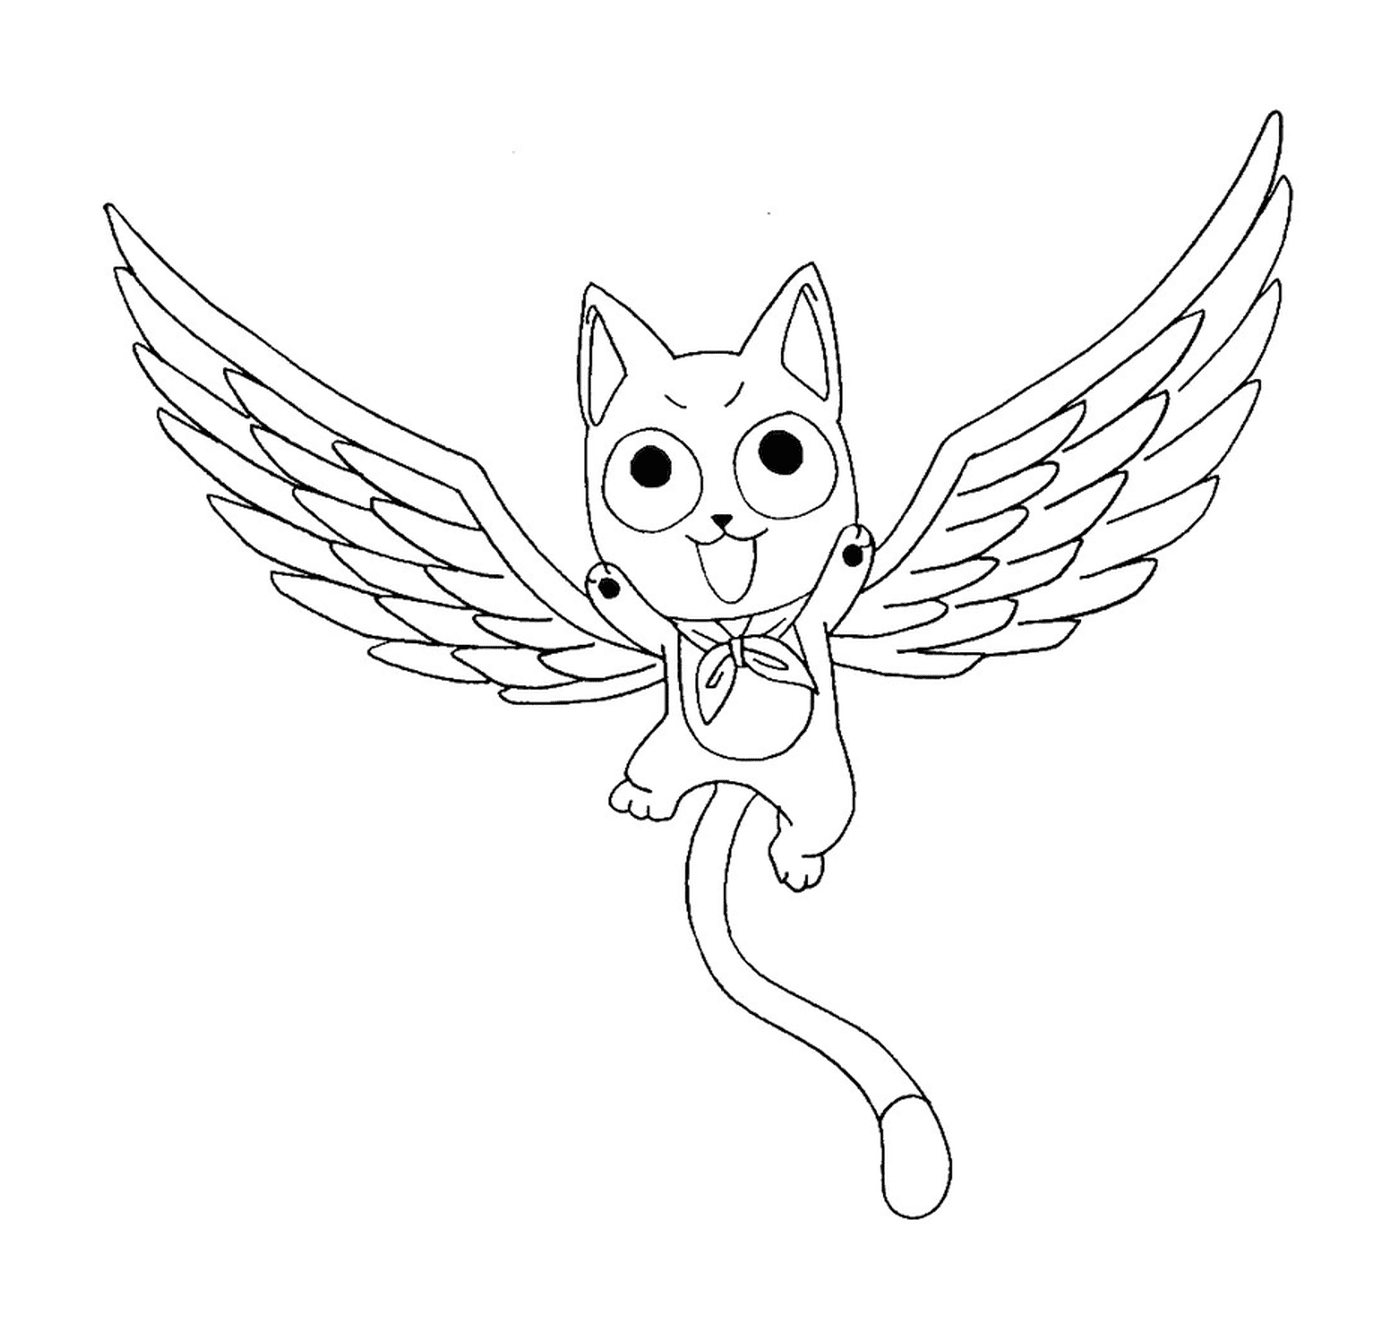  Um gato com asas voando 